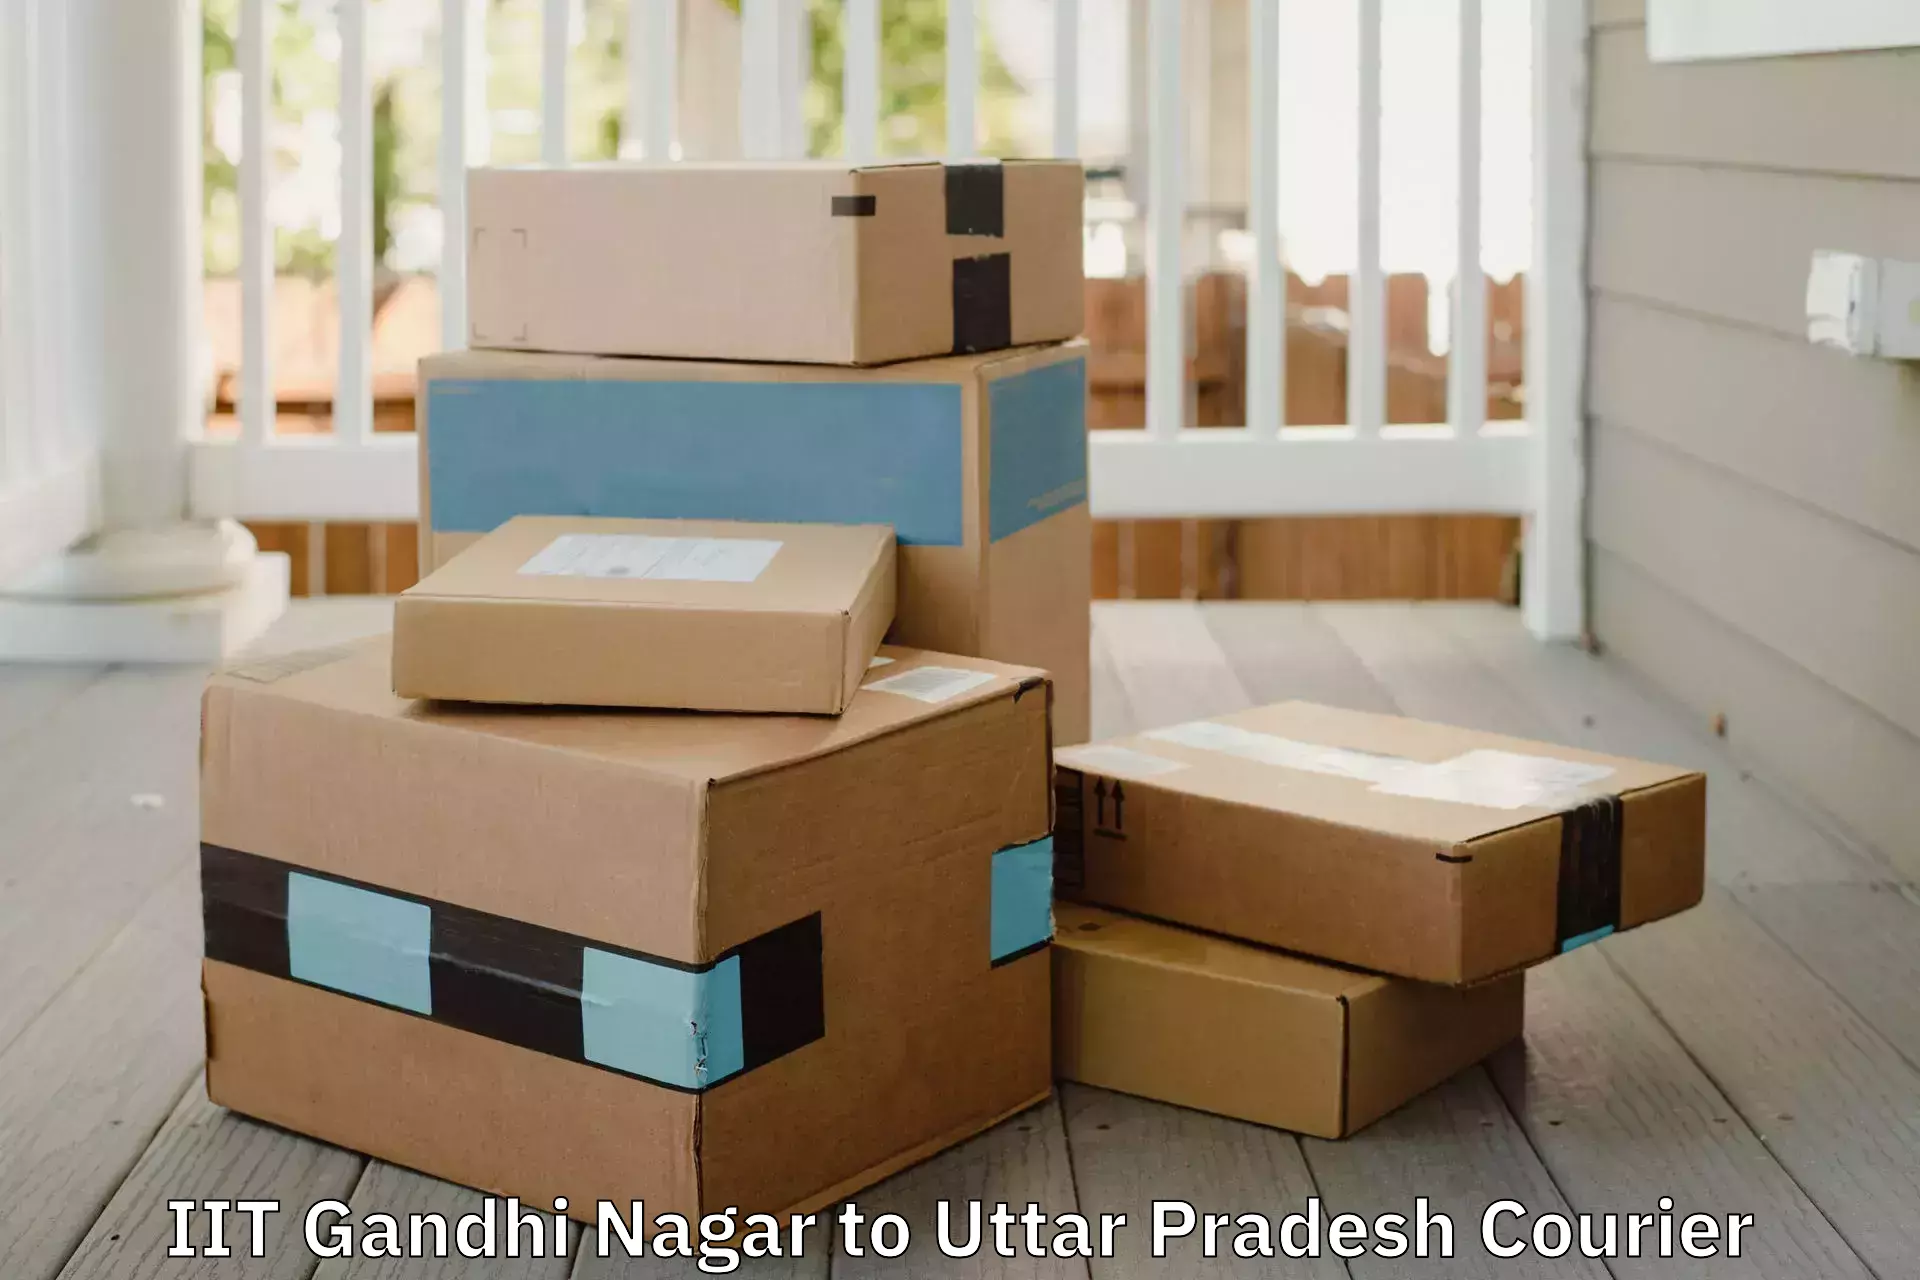 Furniture moving service in IIT Gandhi Nagar to Parora